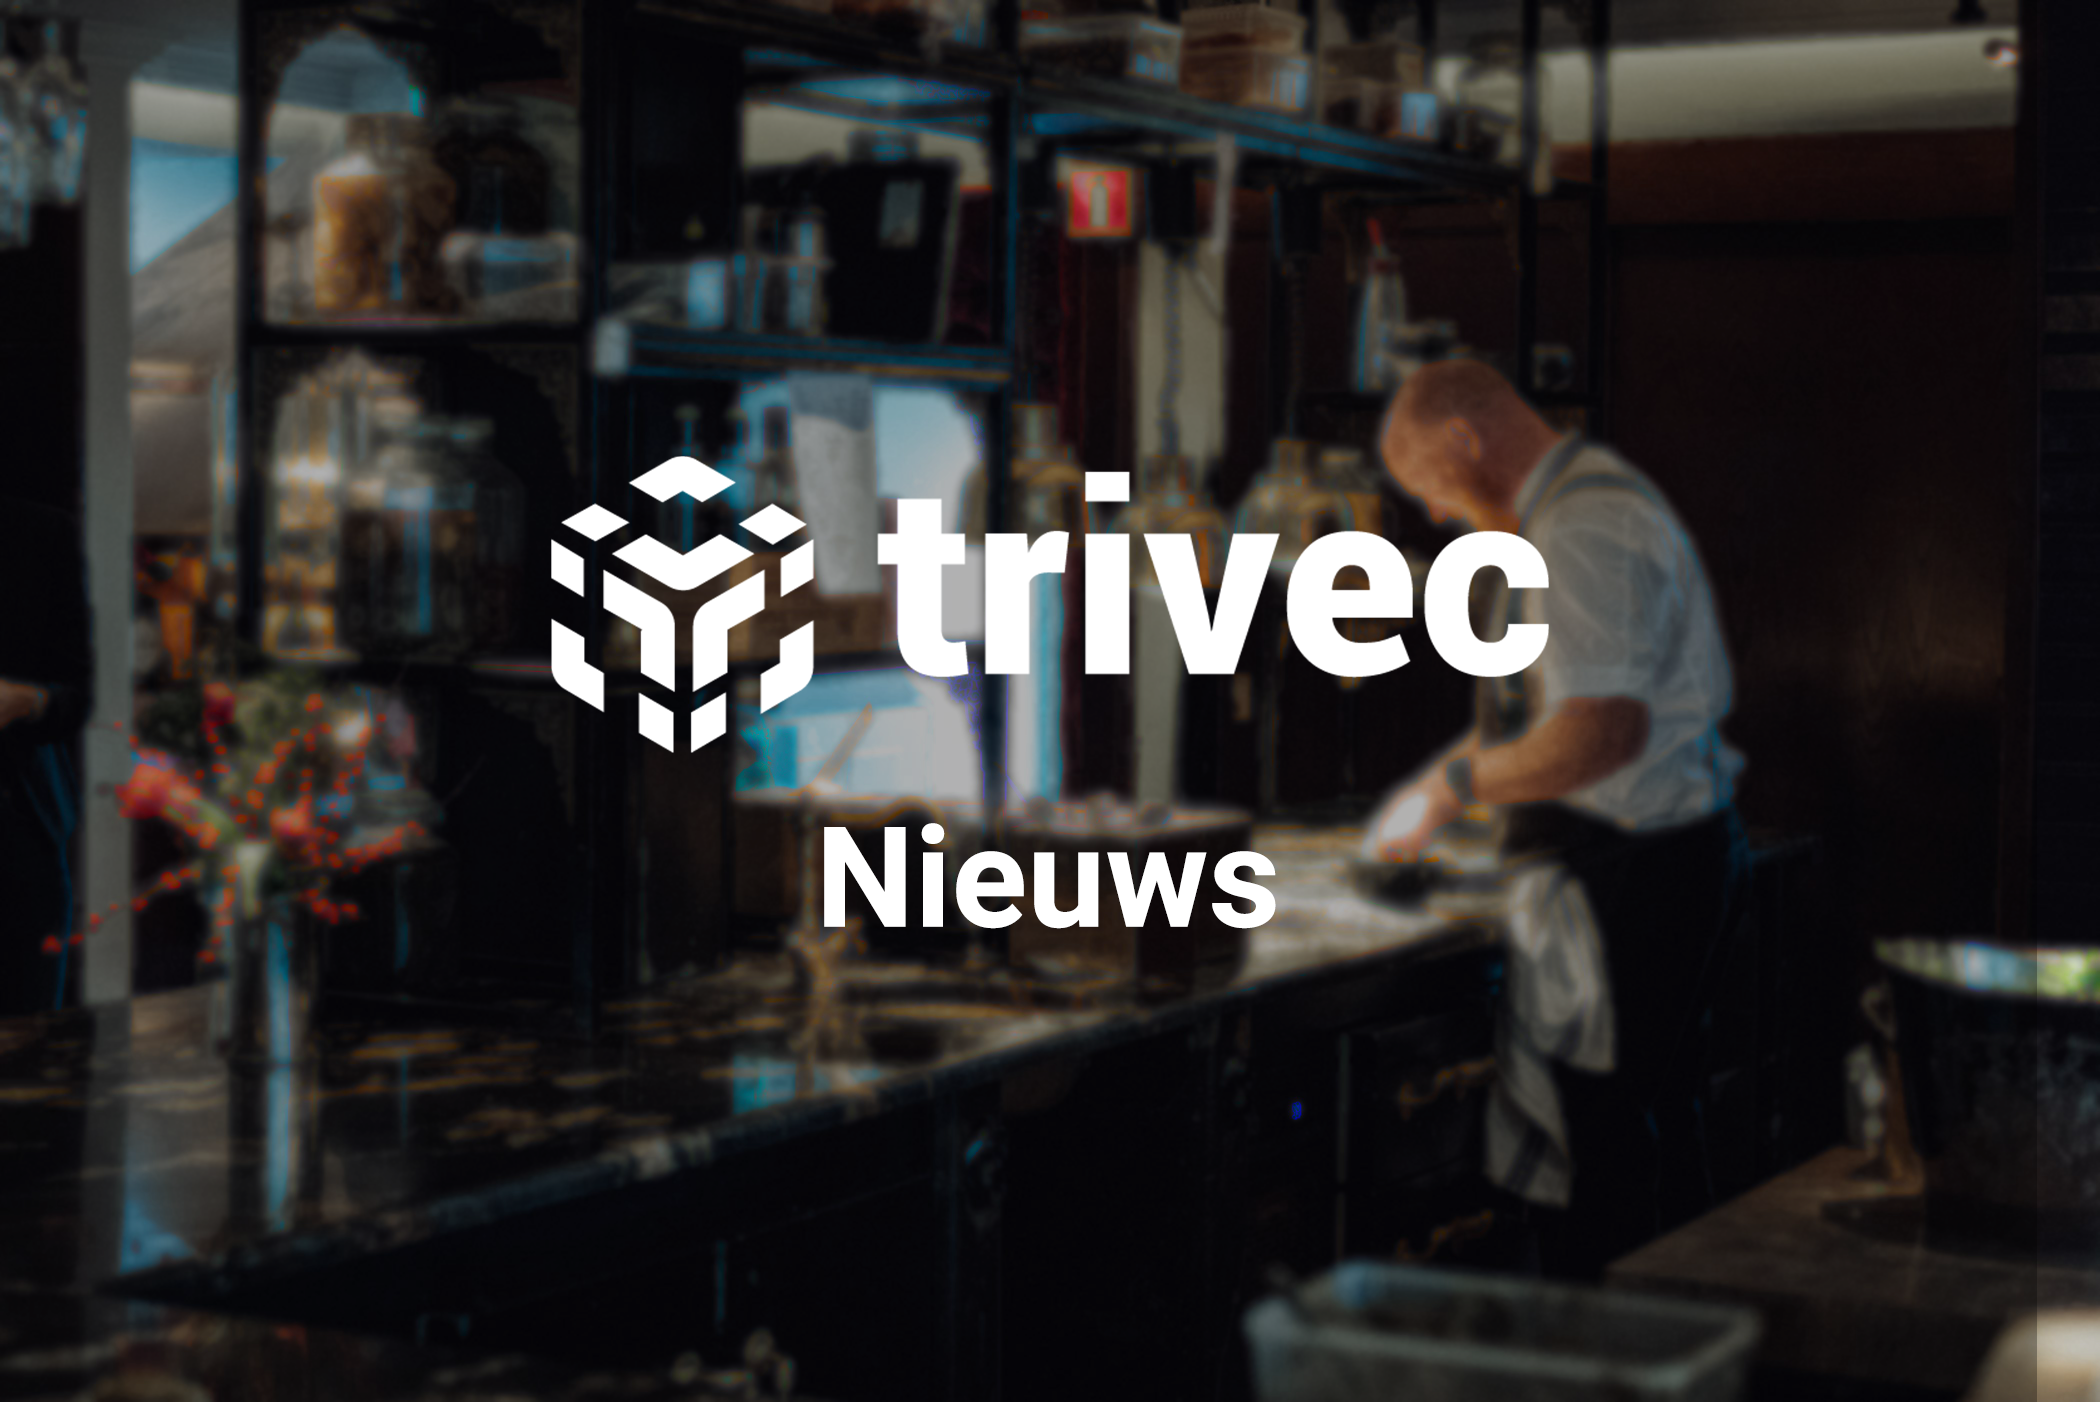 Trivec Nieuws